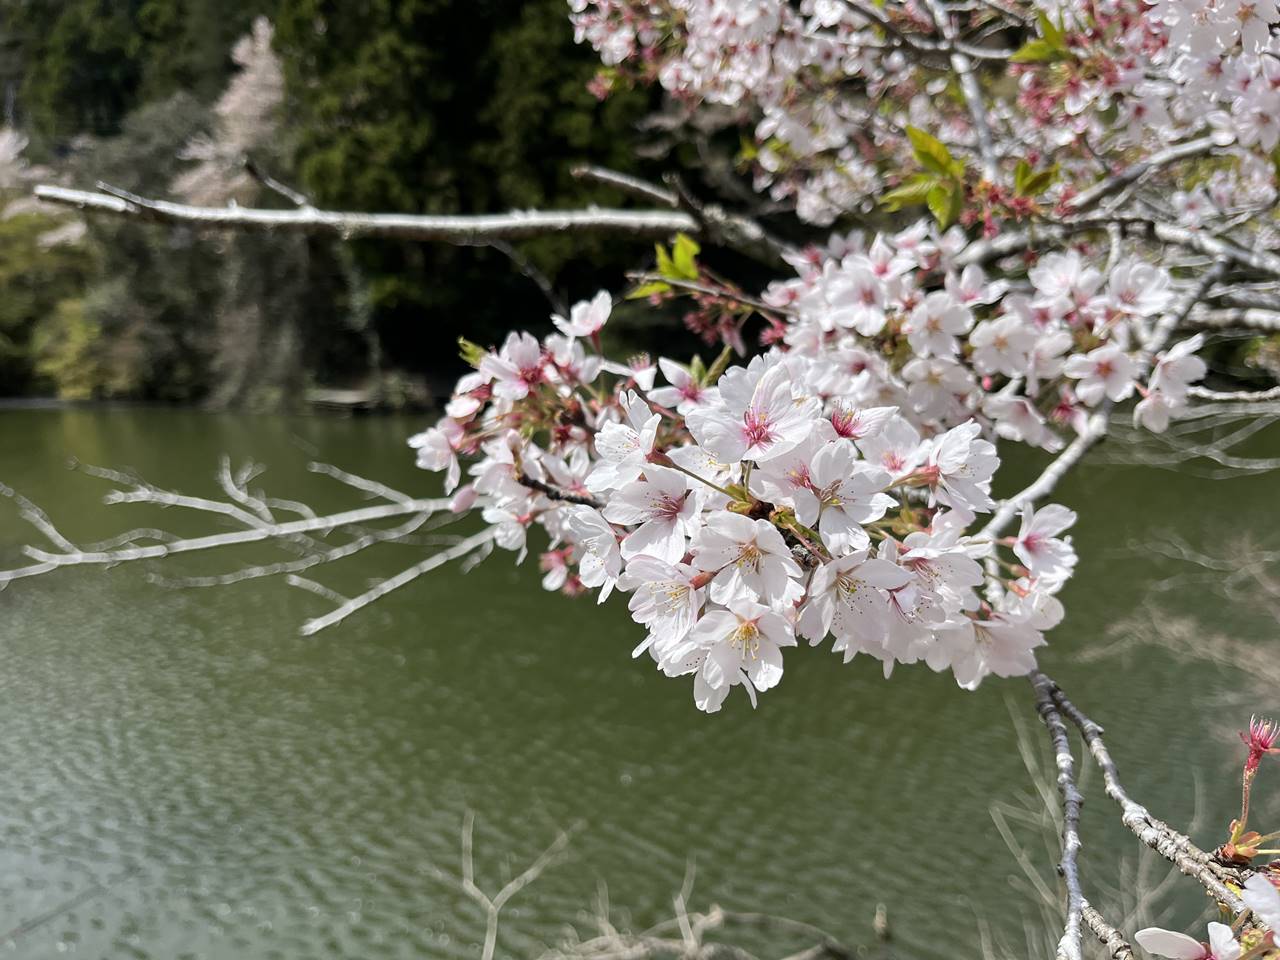 【奥武蔵】ユガテ～鎌北湖 満開の桜咲く桃源郷へ 春の登山